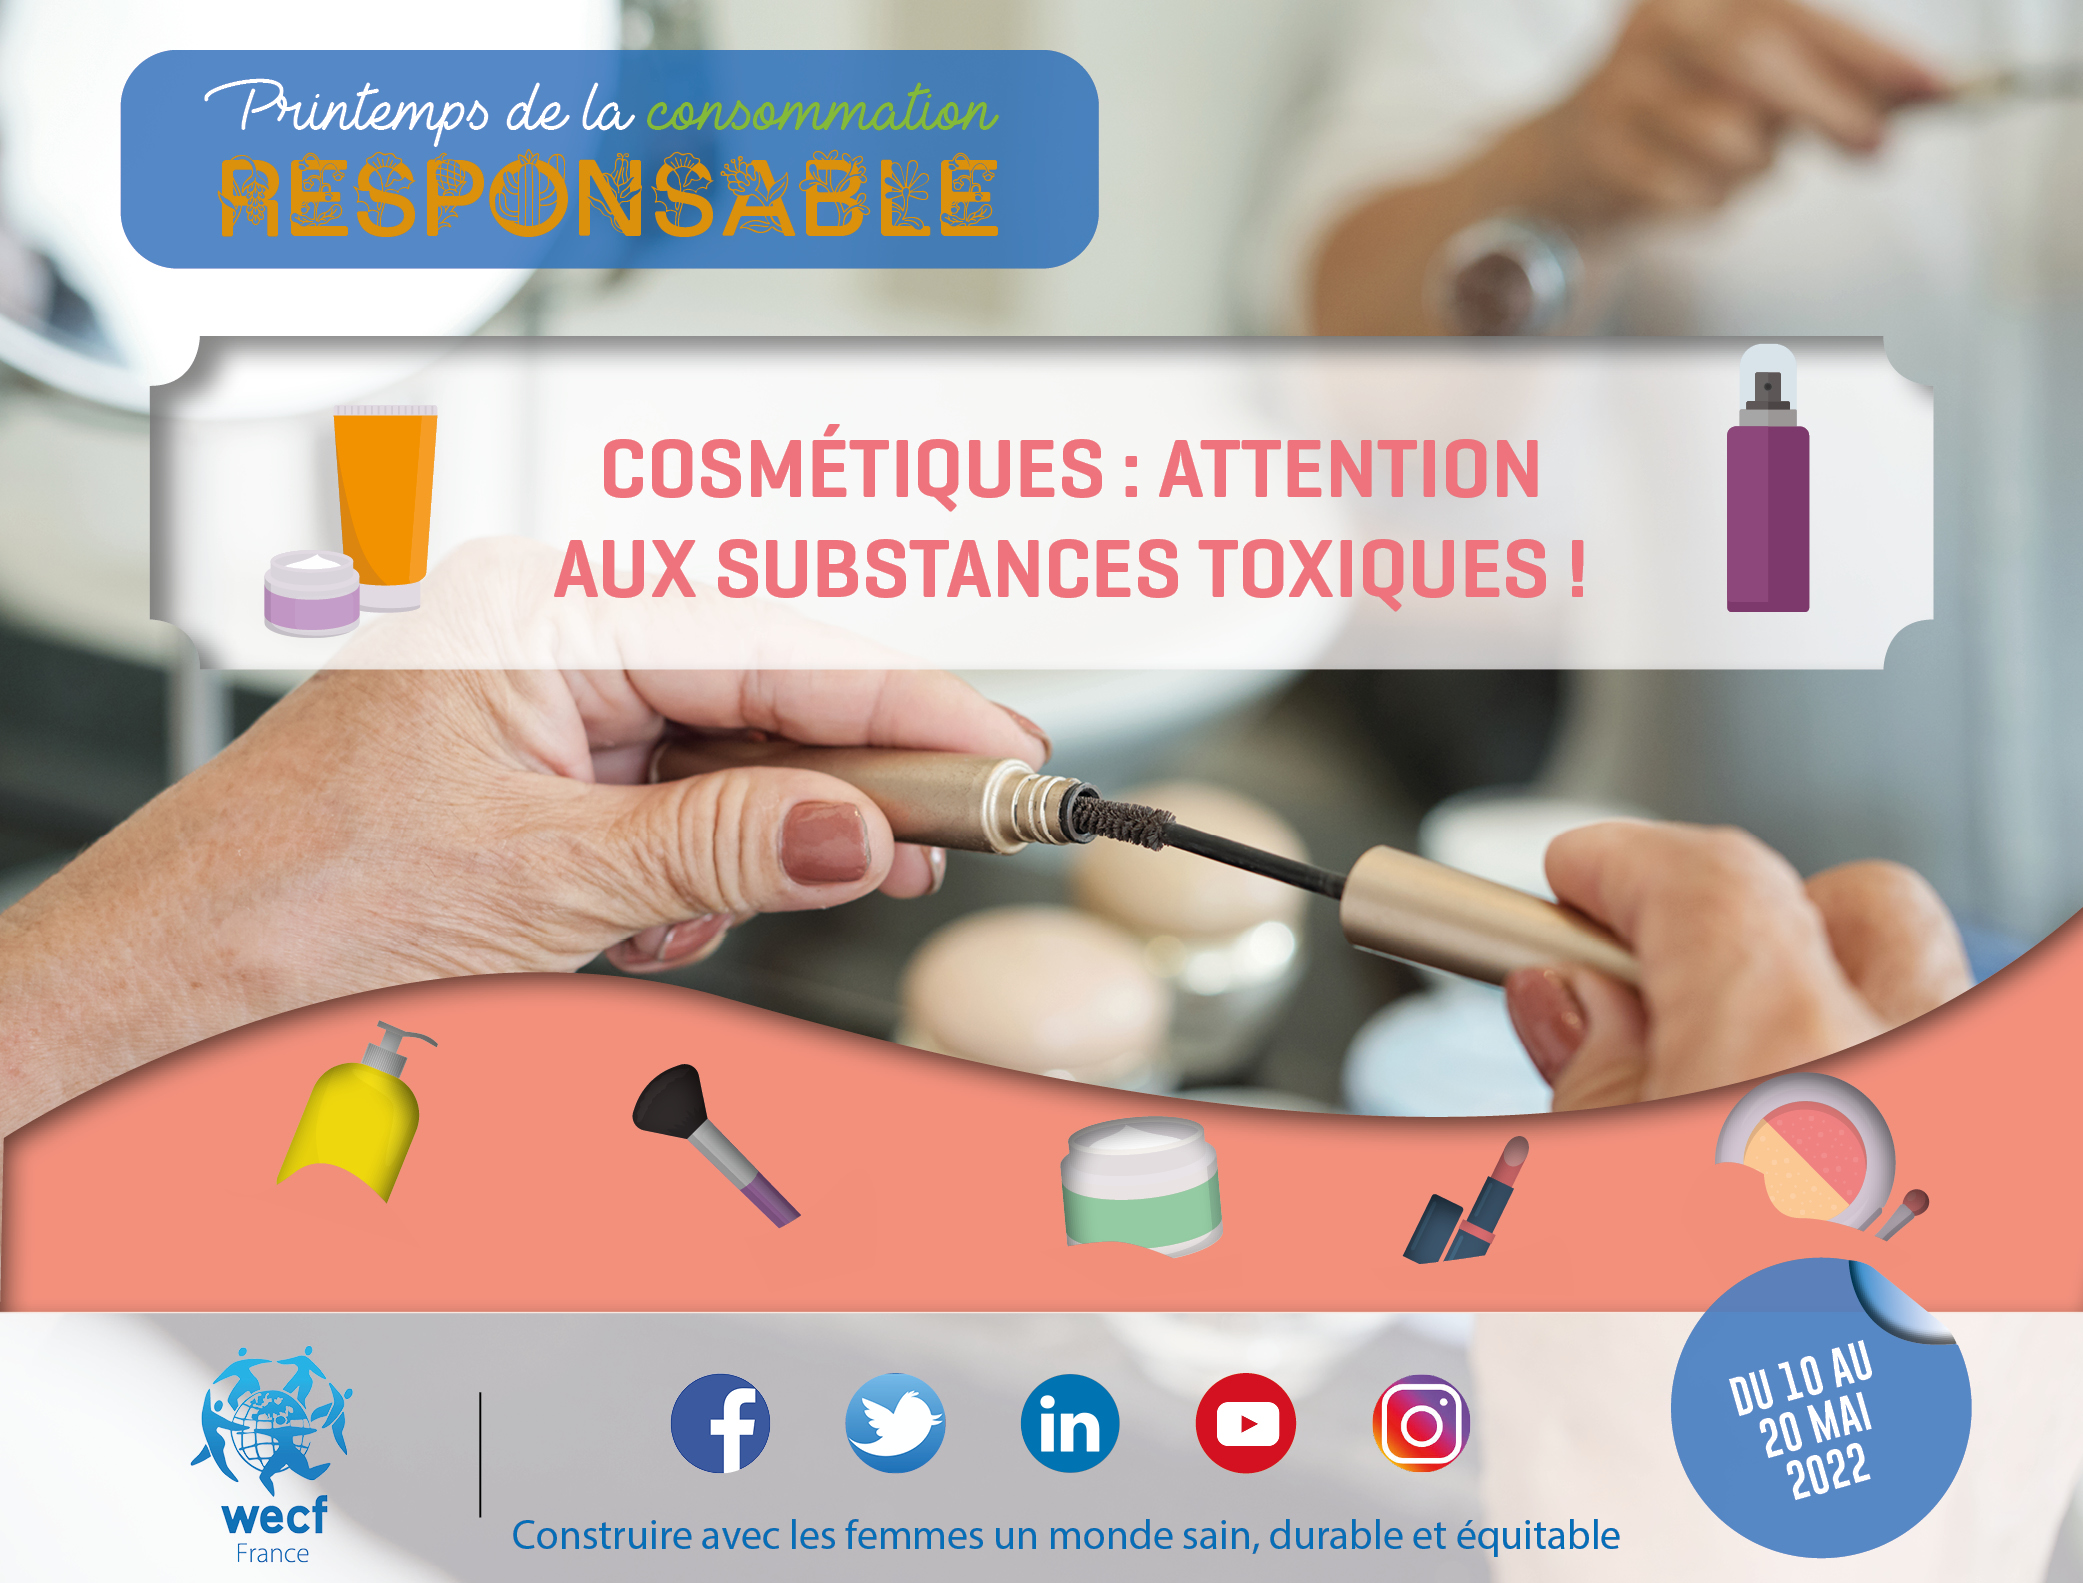 Cosmétiques : attention aux substances toxiques ! Des alternatives pour des cosmétiques plus durables